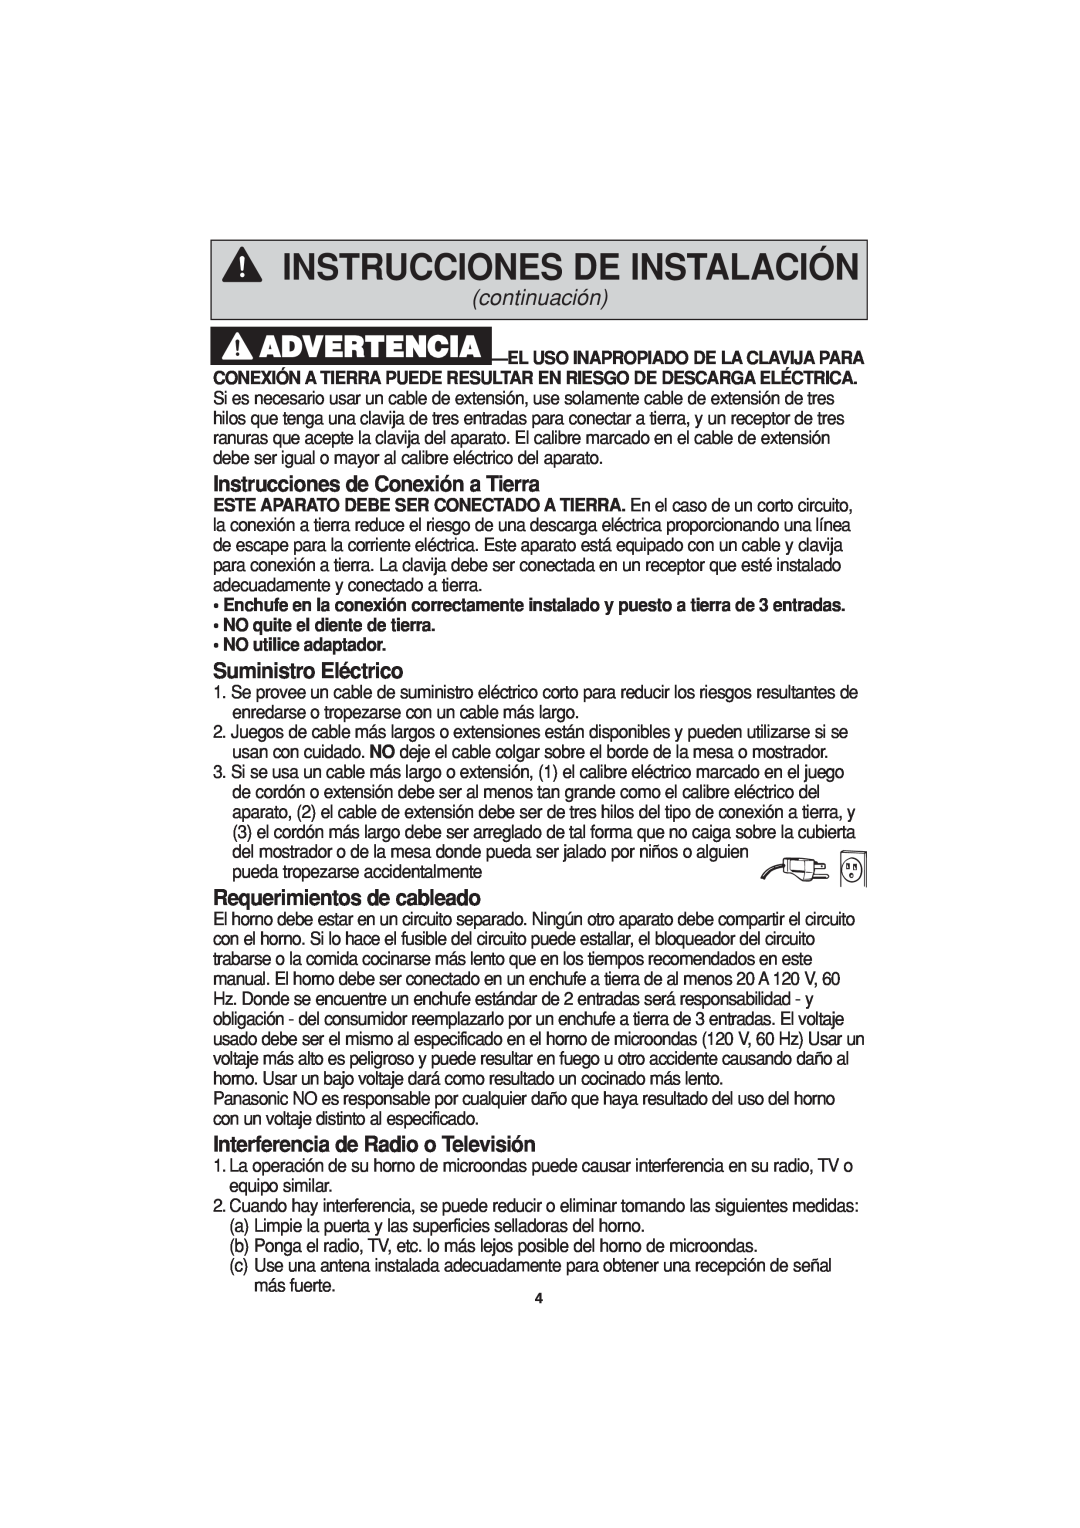 Panasonic NN-H614 Instrucciones de Conexión a Tierra, Suministro Eléctrico, Requerimientos de cableado, continuación 